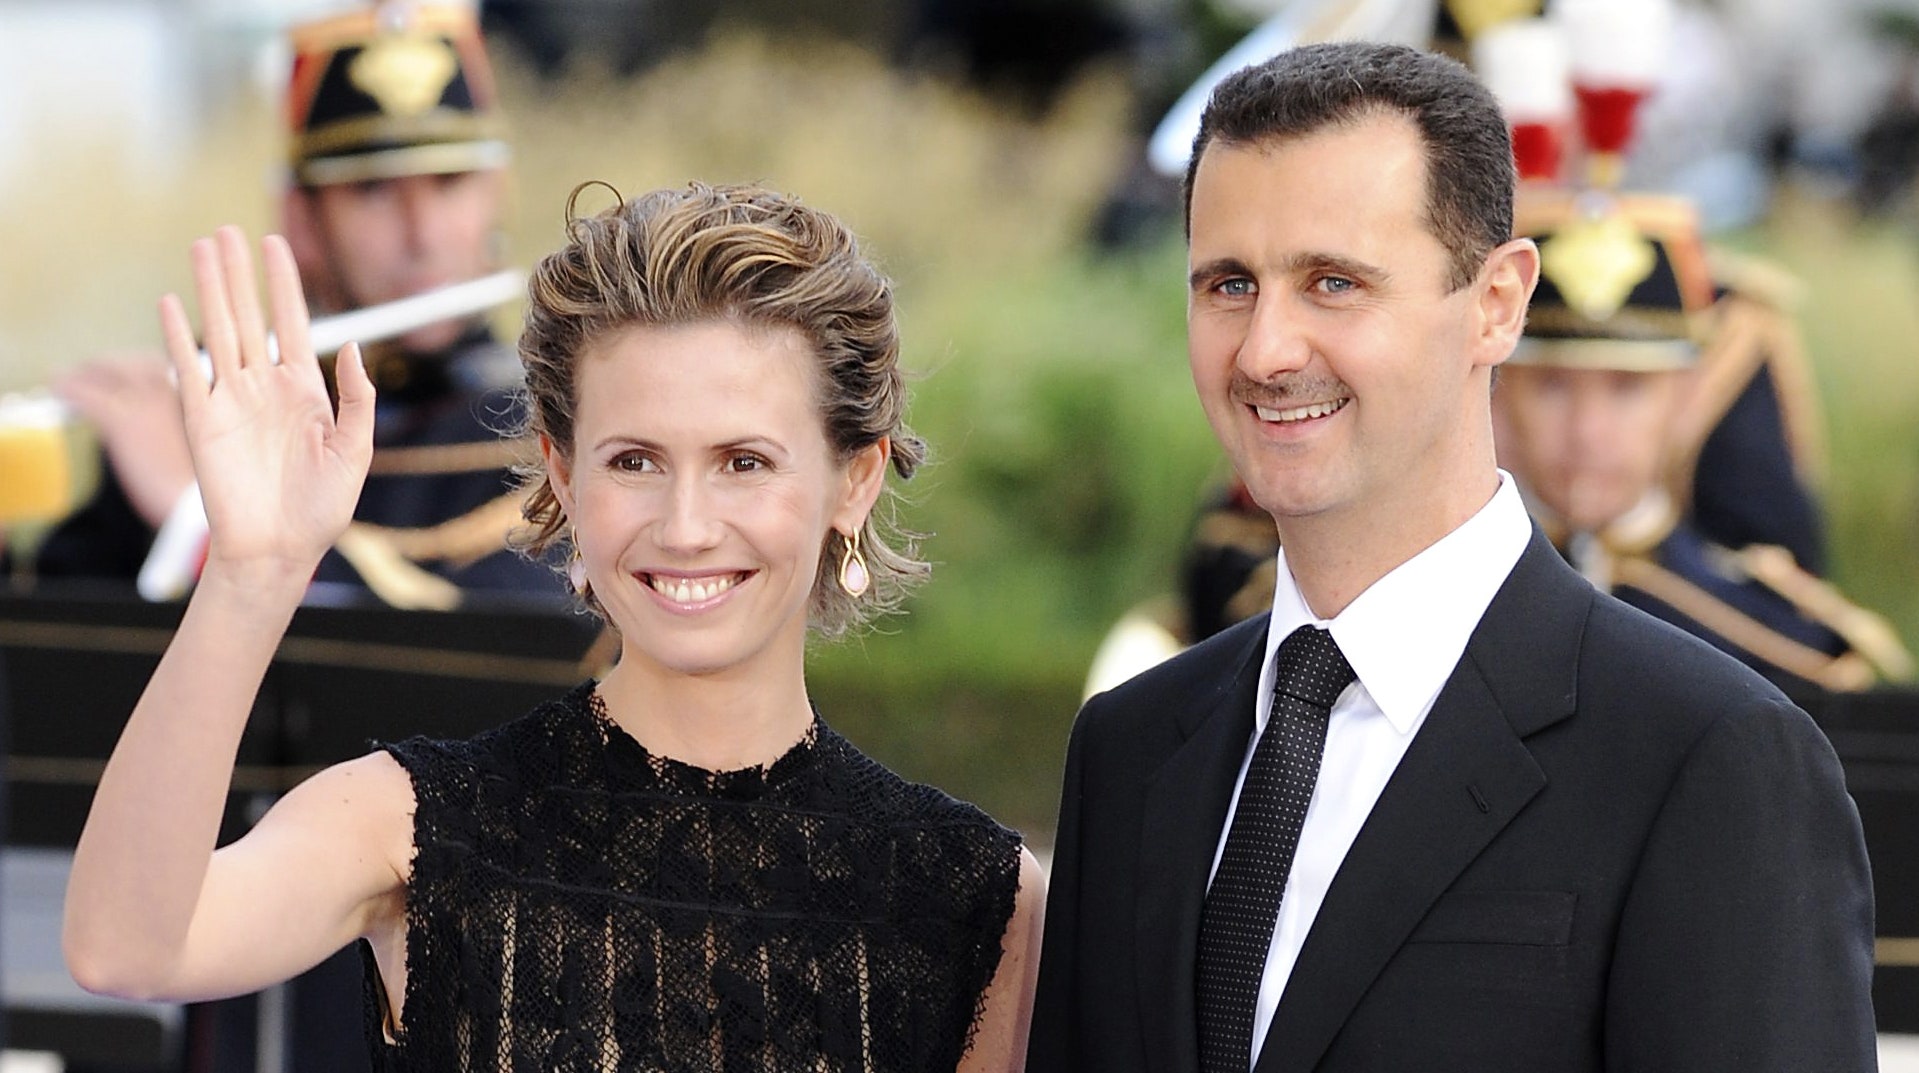 Асма Асад почему жену президента Сирии сравнивали с принцессой Дианой а теперь называют «первой леди преисподней»